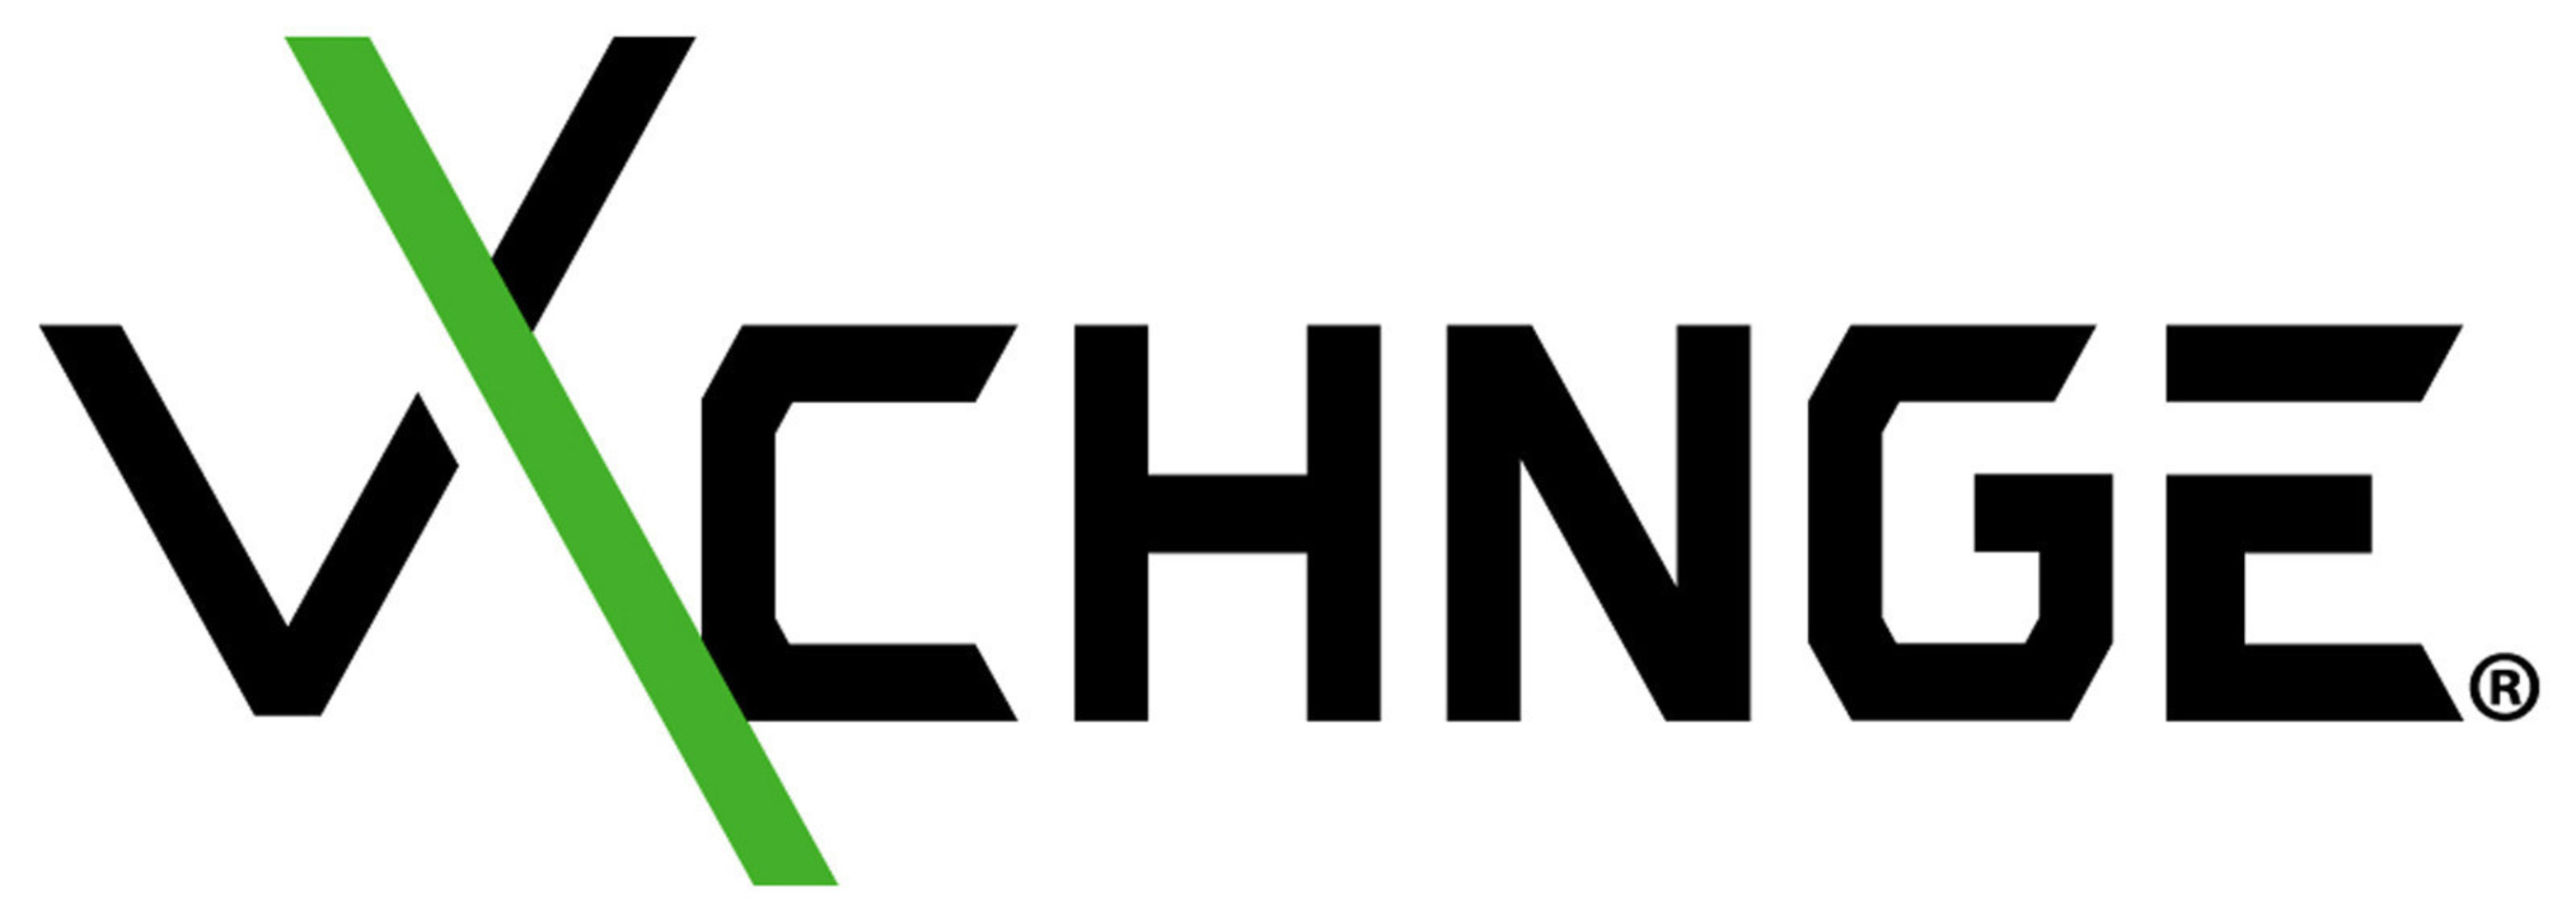 vXchnge Logo